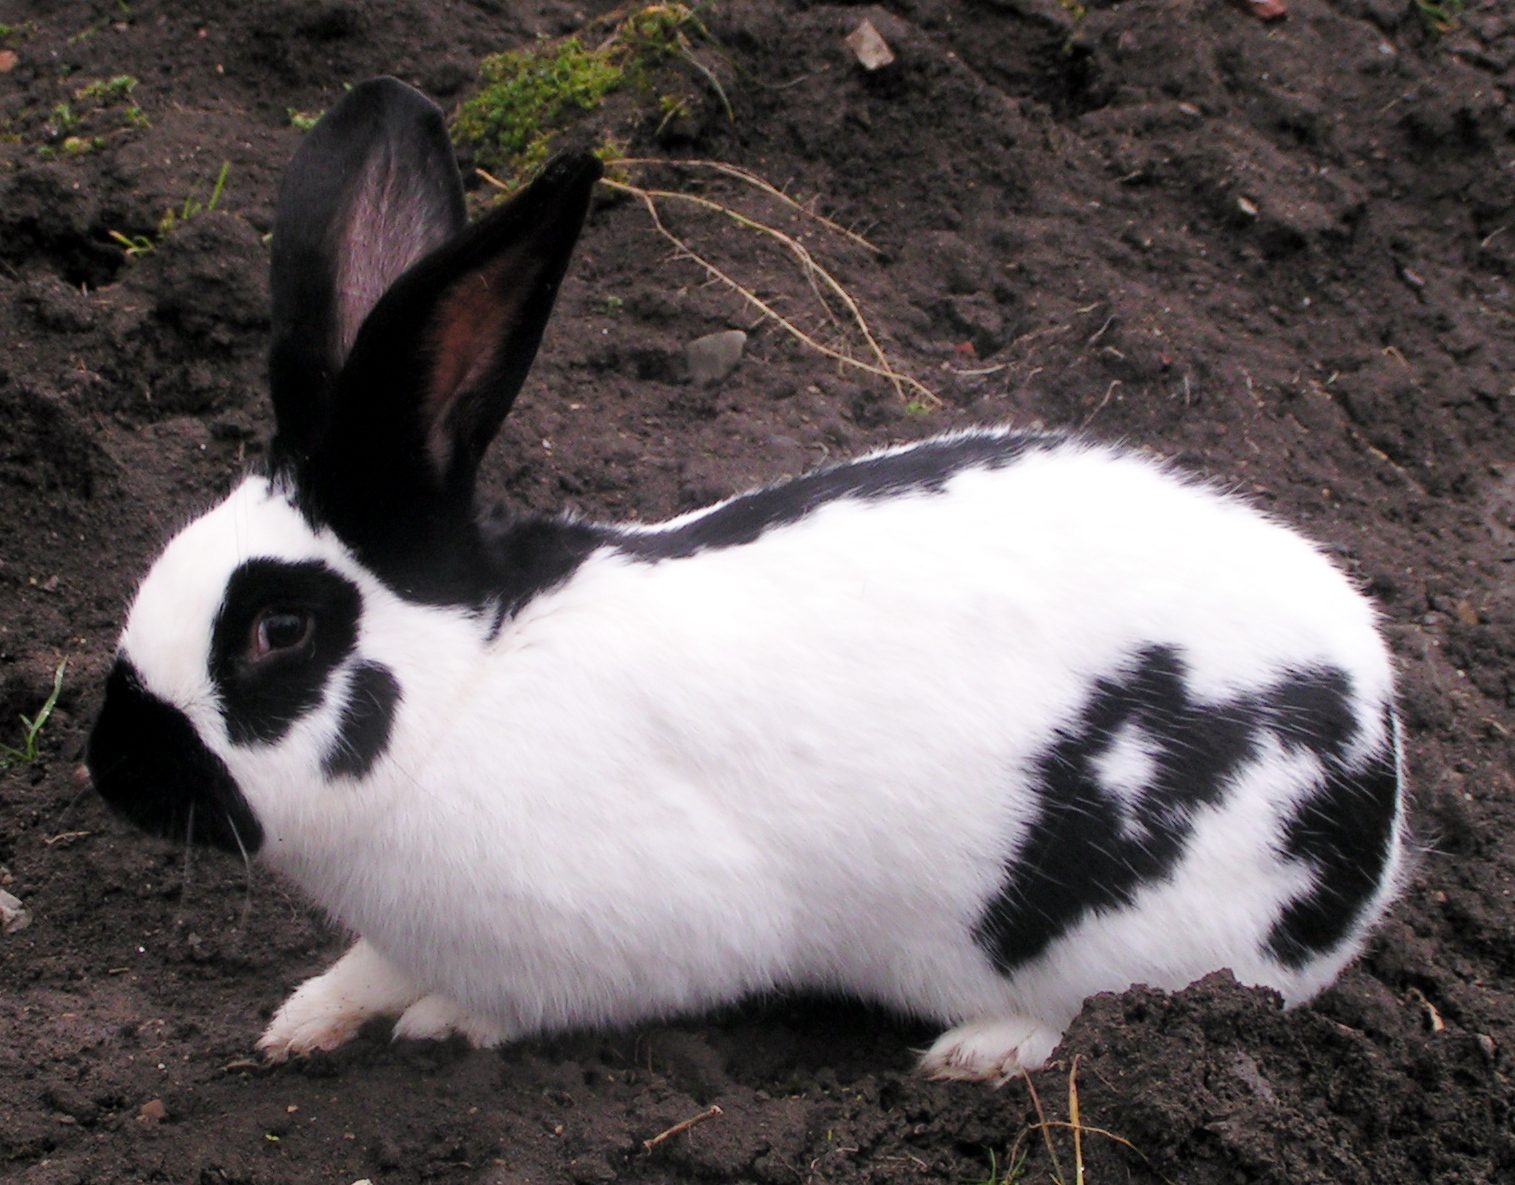 checkered rabbit